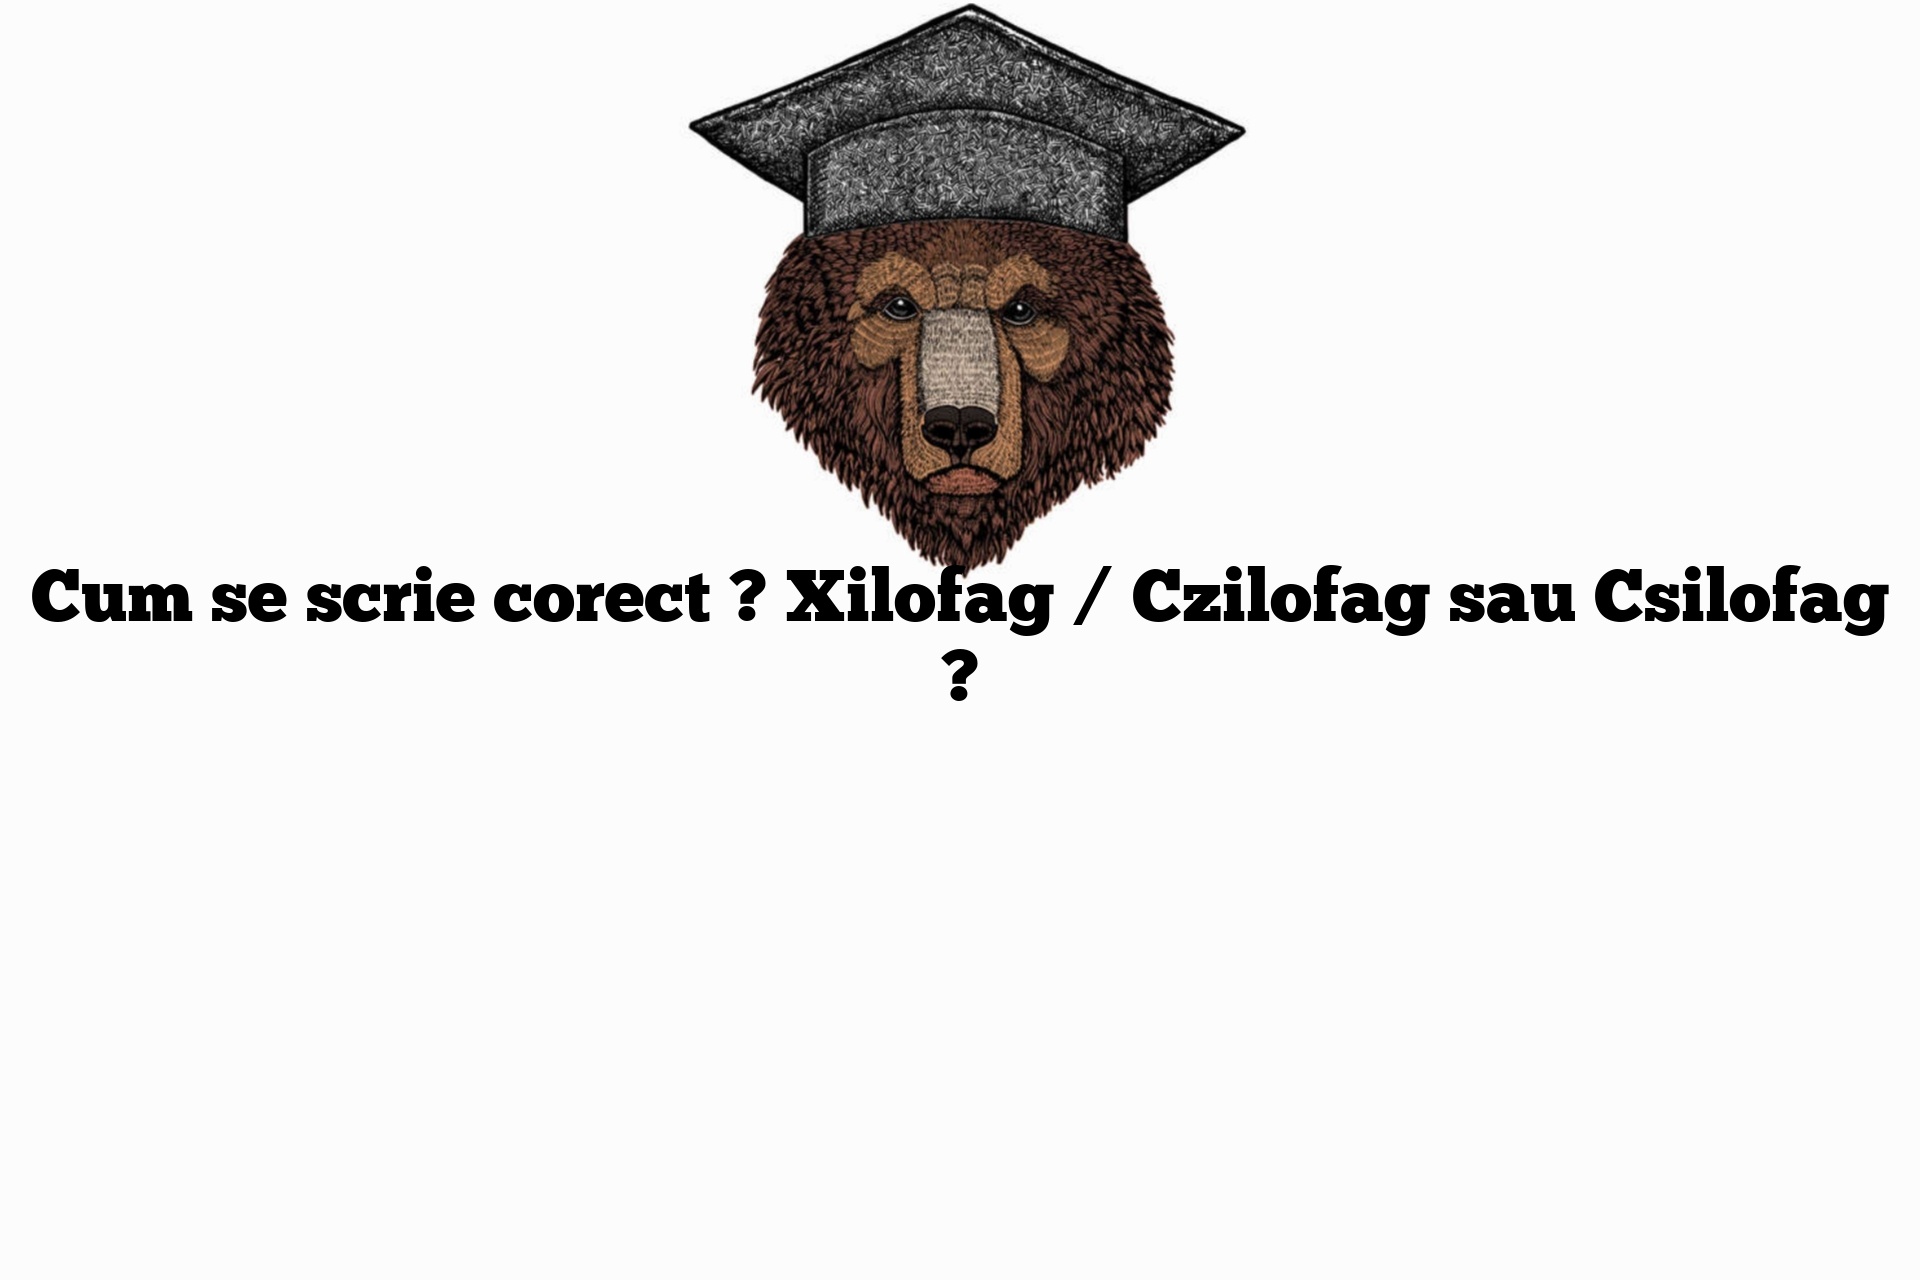 Cum se scrie corect ? Xilofag / Czilofag sau Csilofag ?